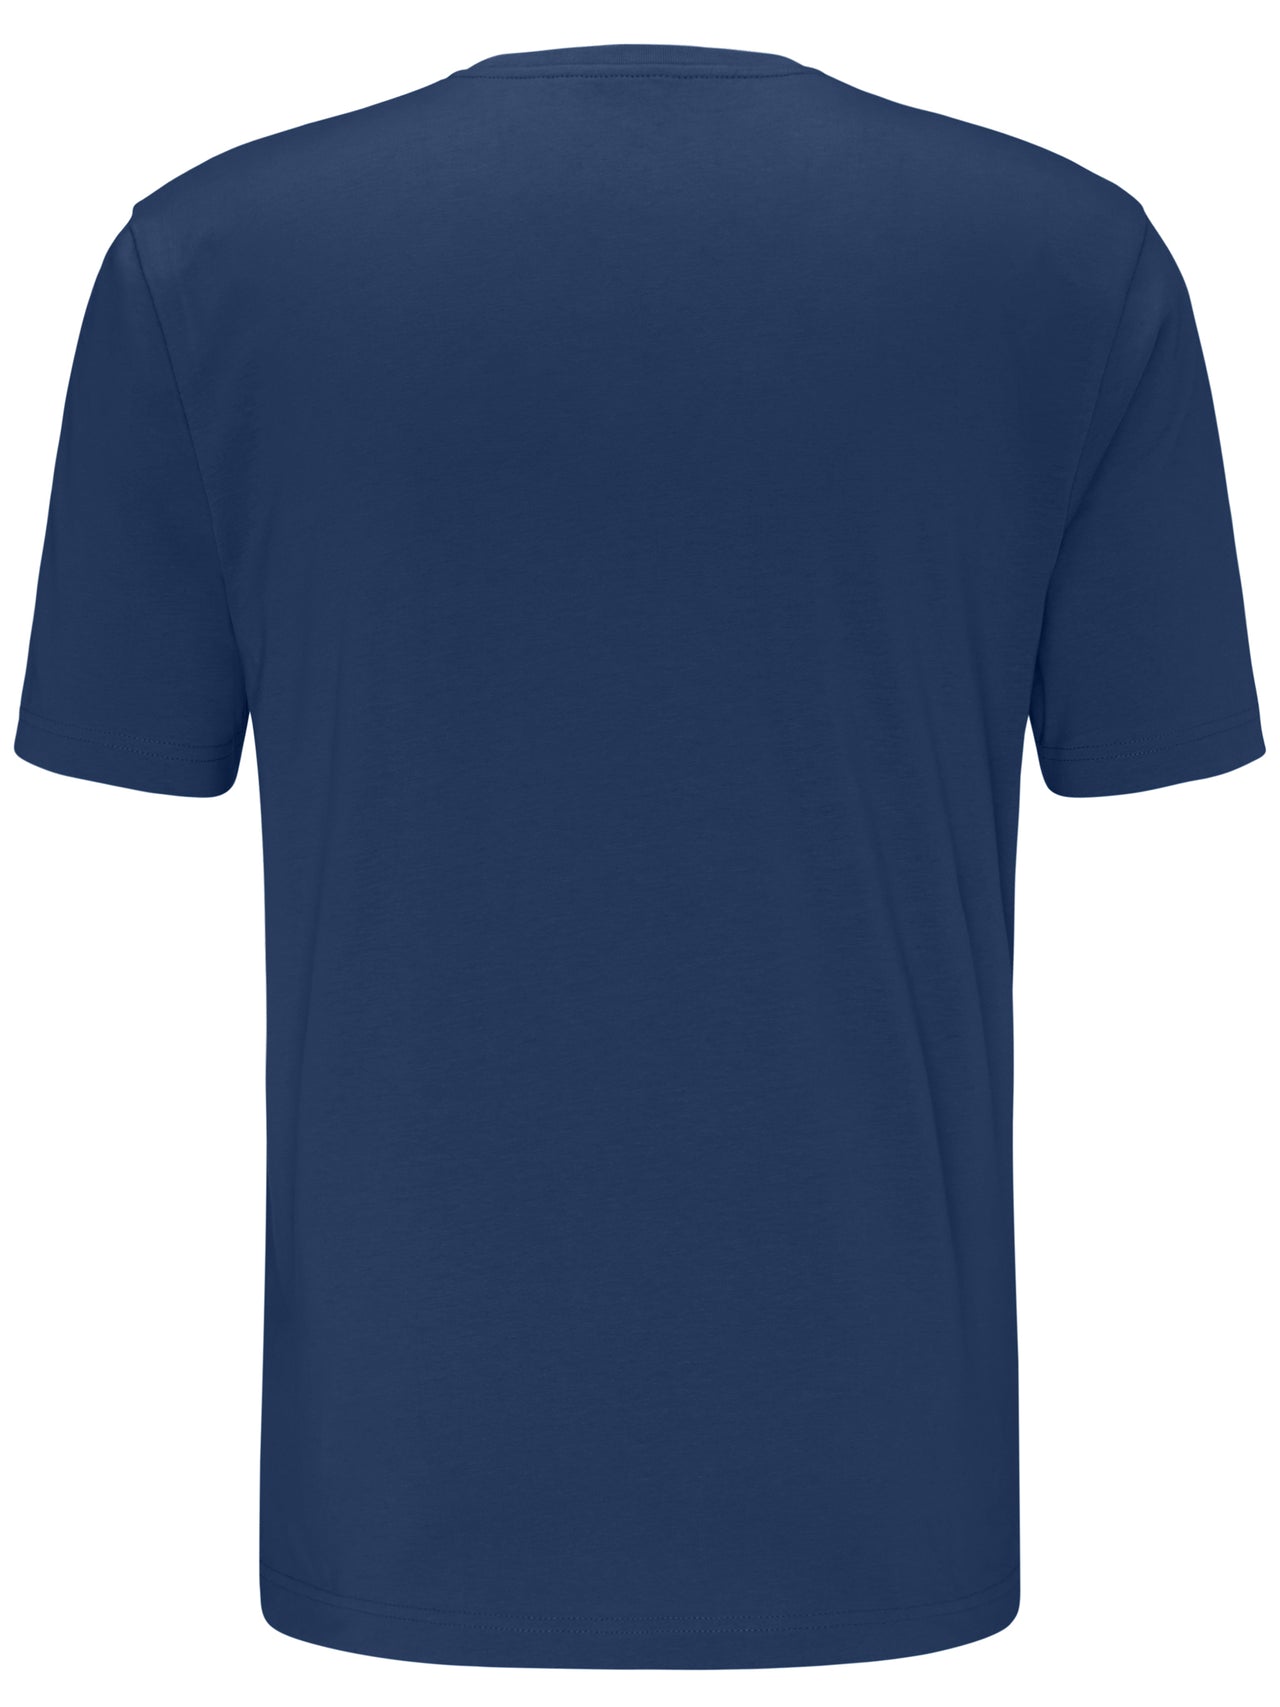 Fynch Hatton Round Neck T-shirt